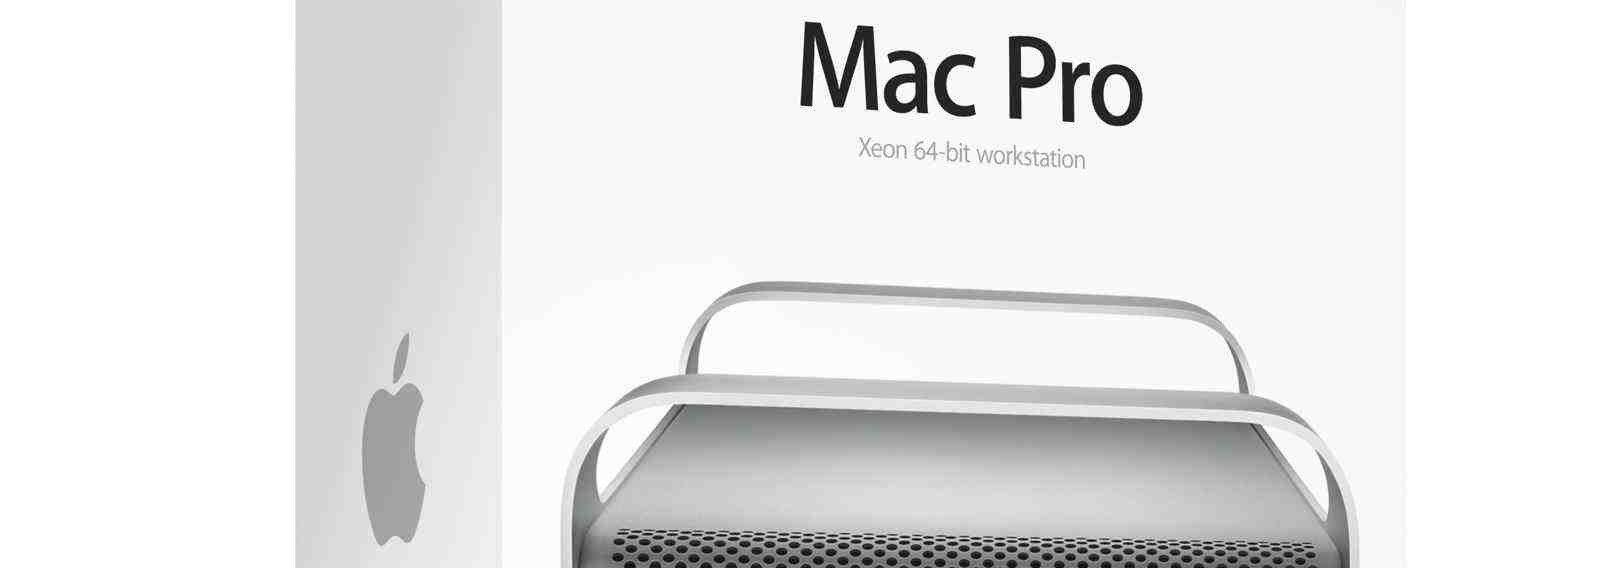 Le Mac Pro connaîtrait enfin une mise à jour la semaine prochaine